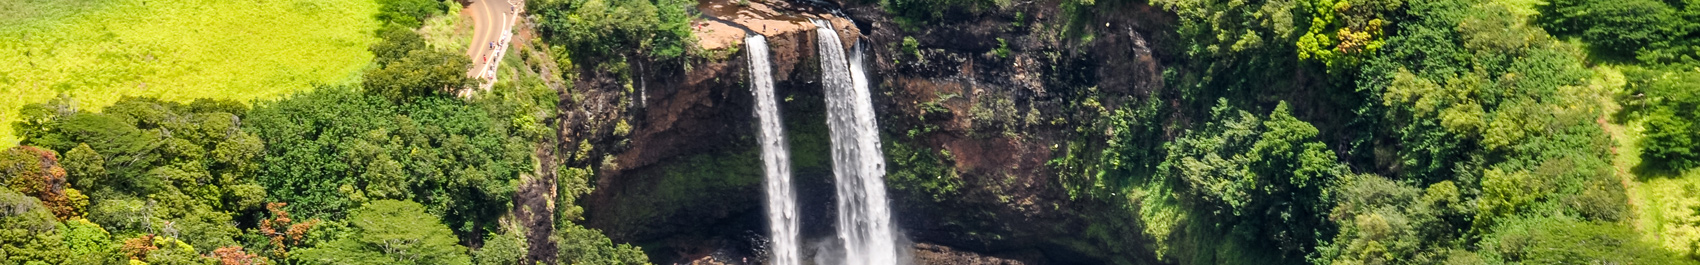 Wailua waterfall on Kauai